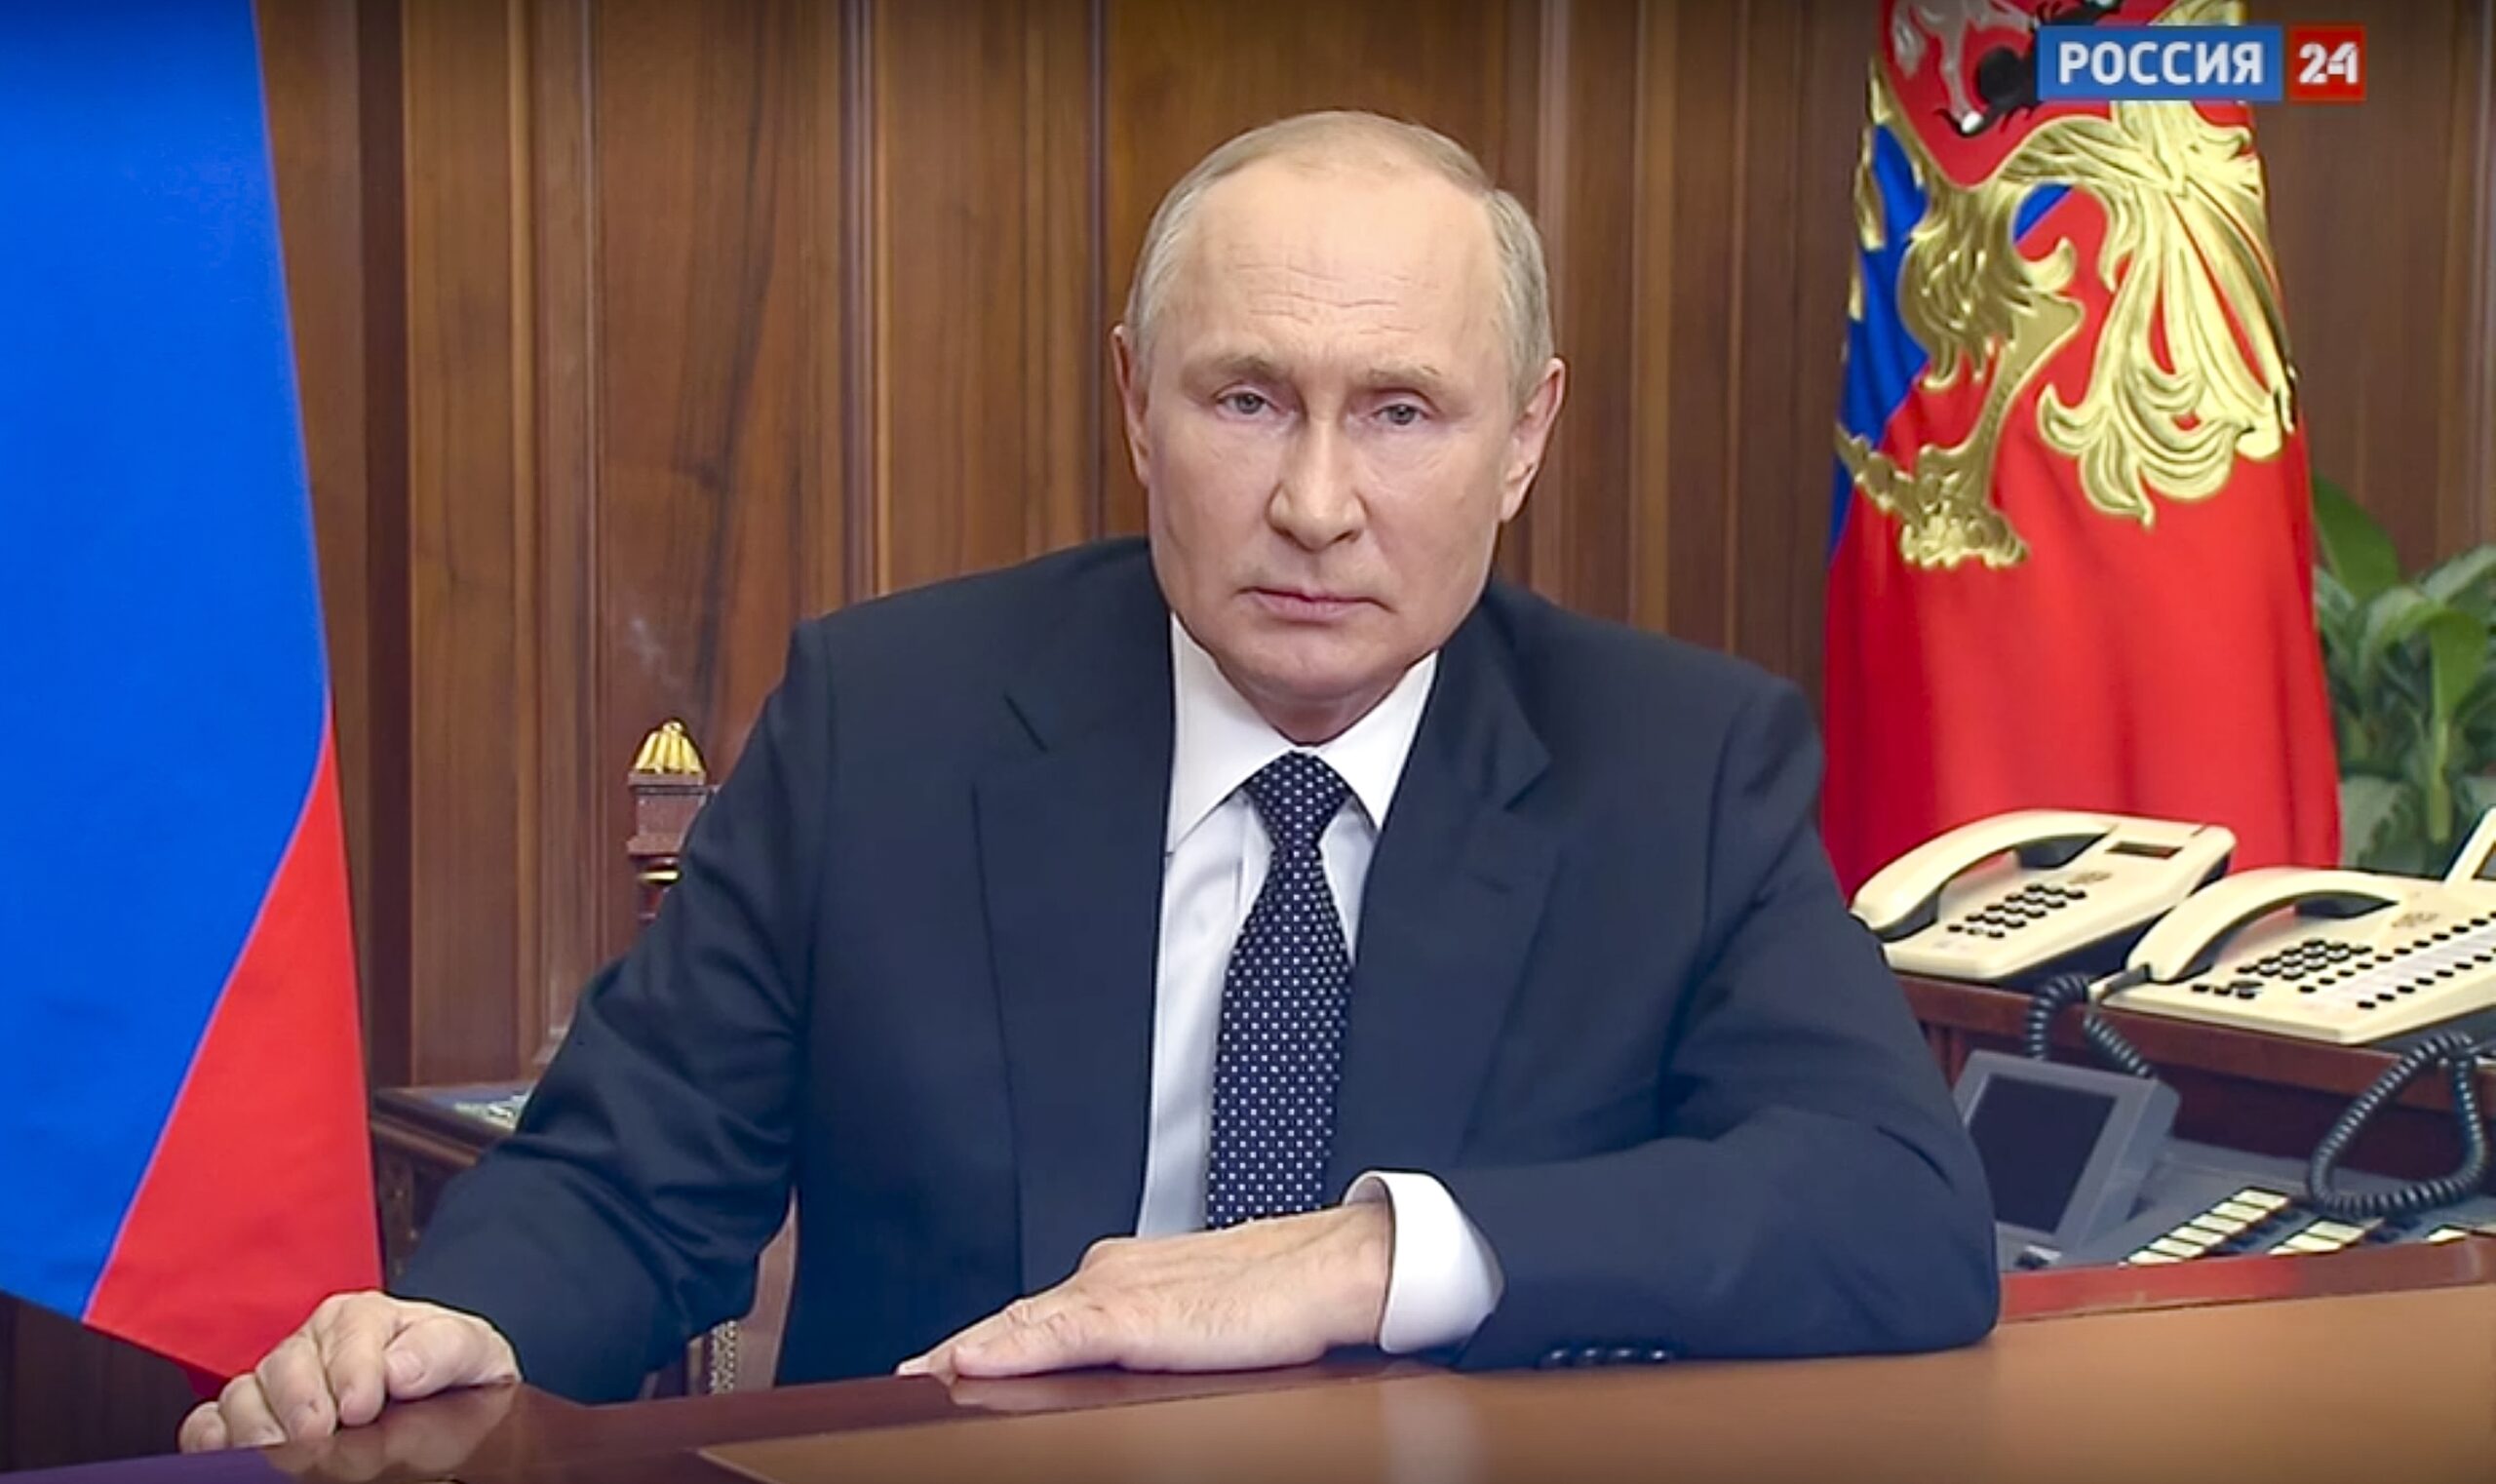 Standbild der Fernsehansprache, Putin guckt ernst in die Kamera